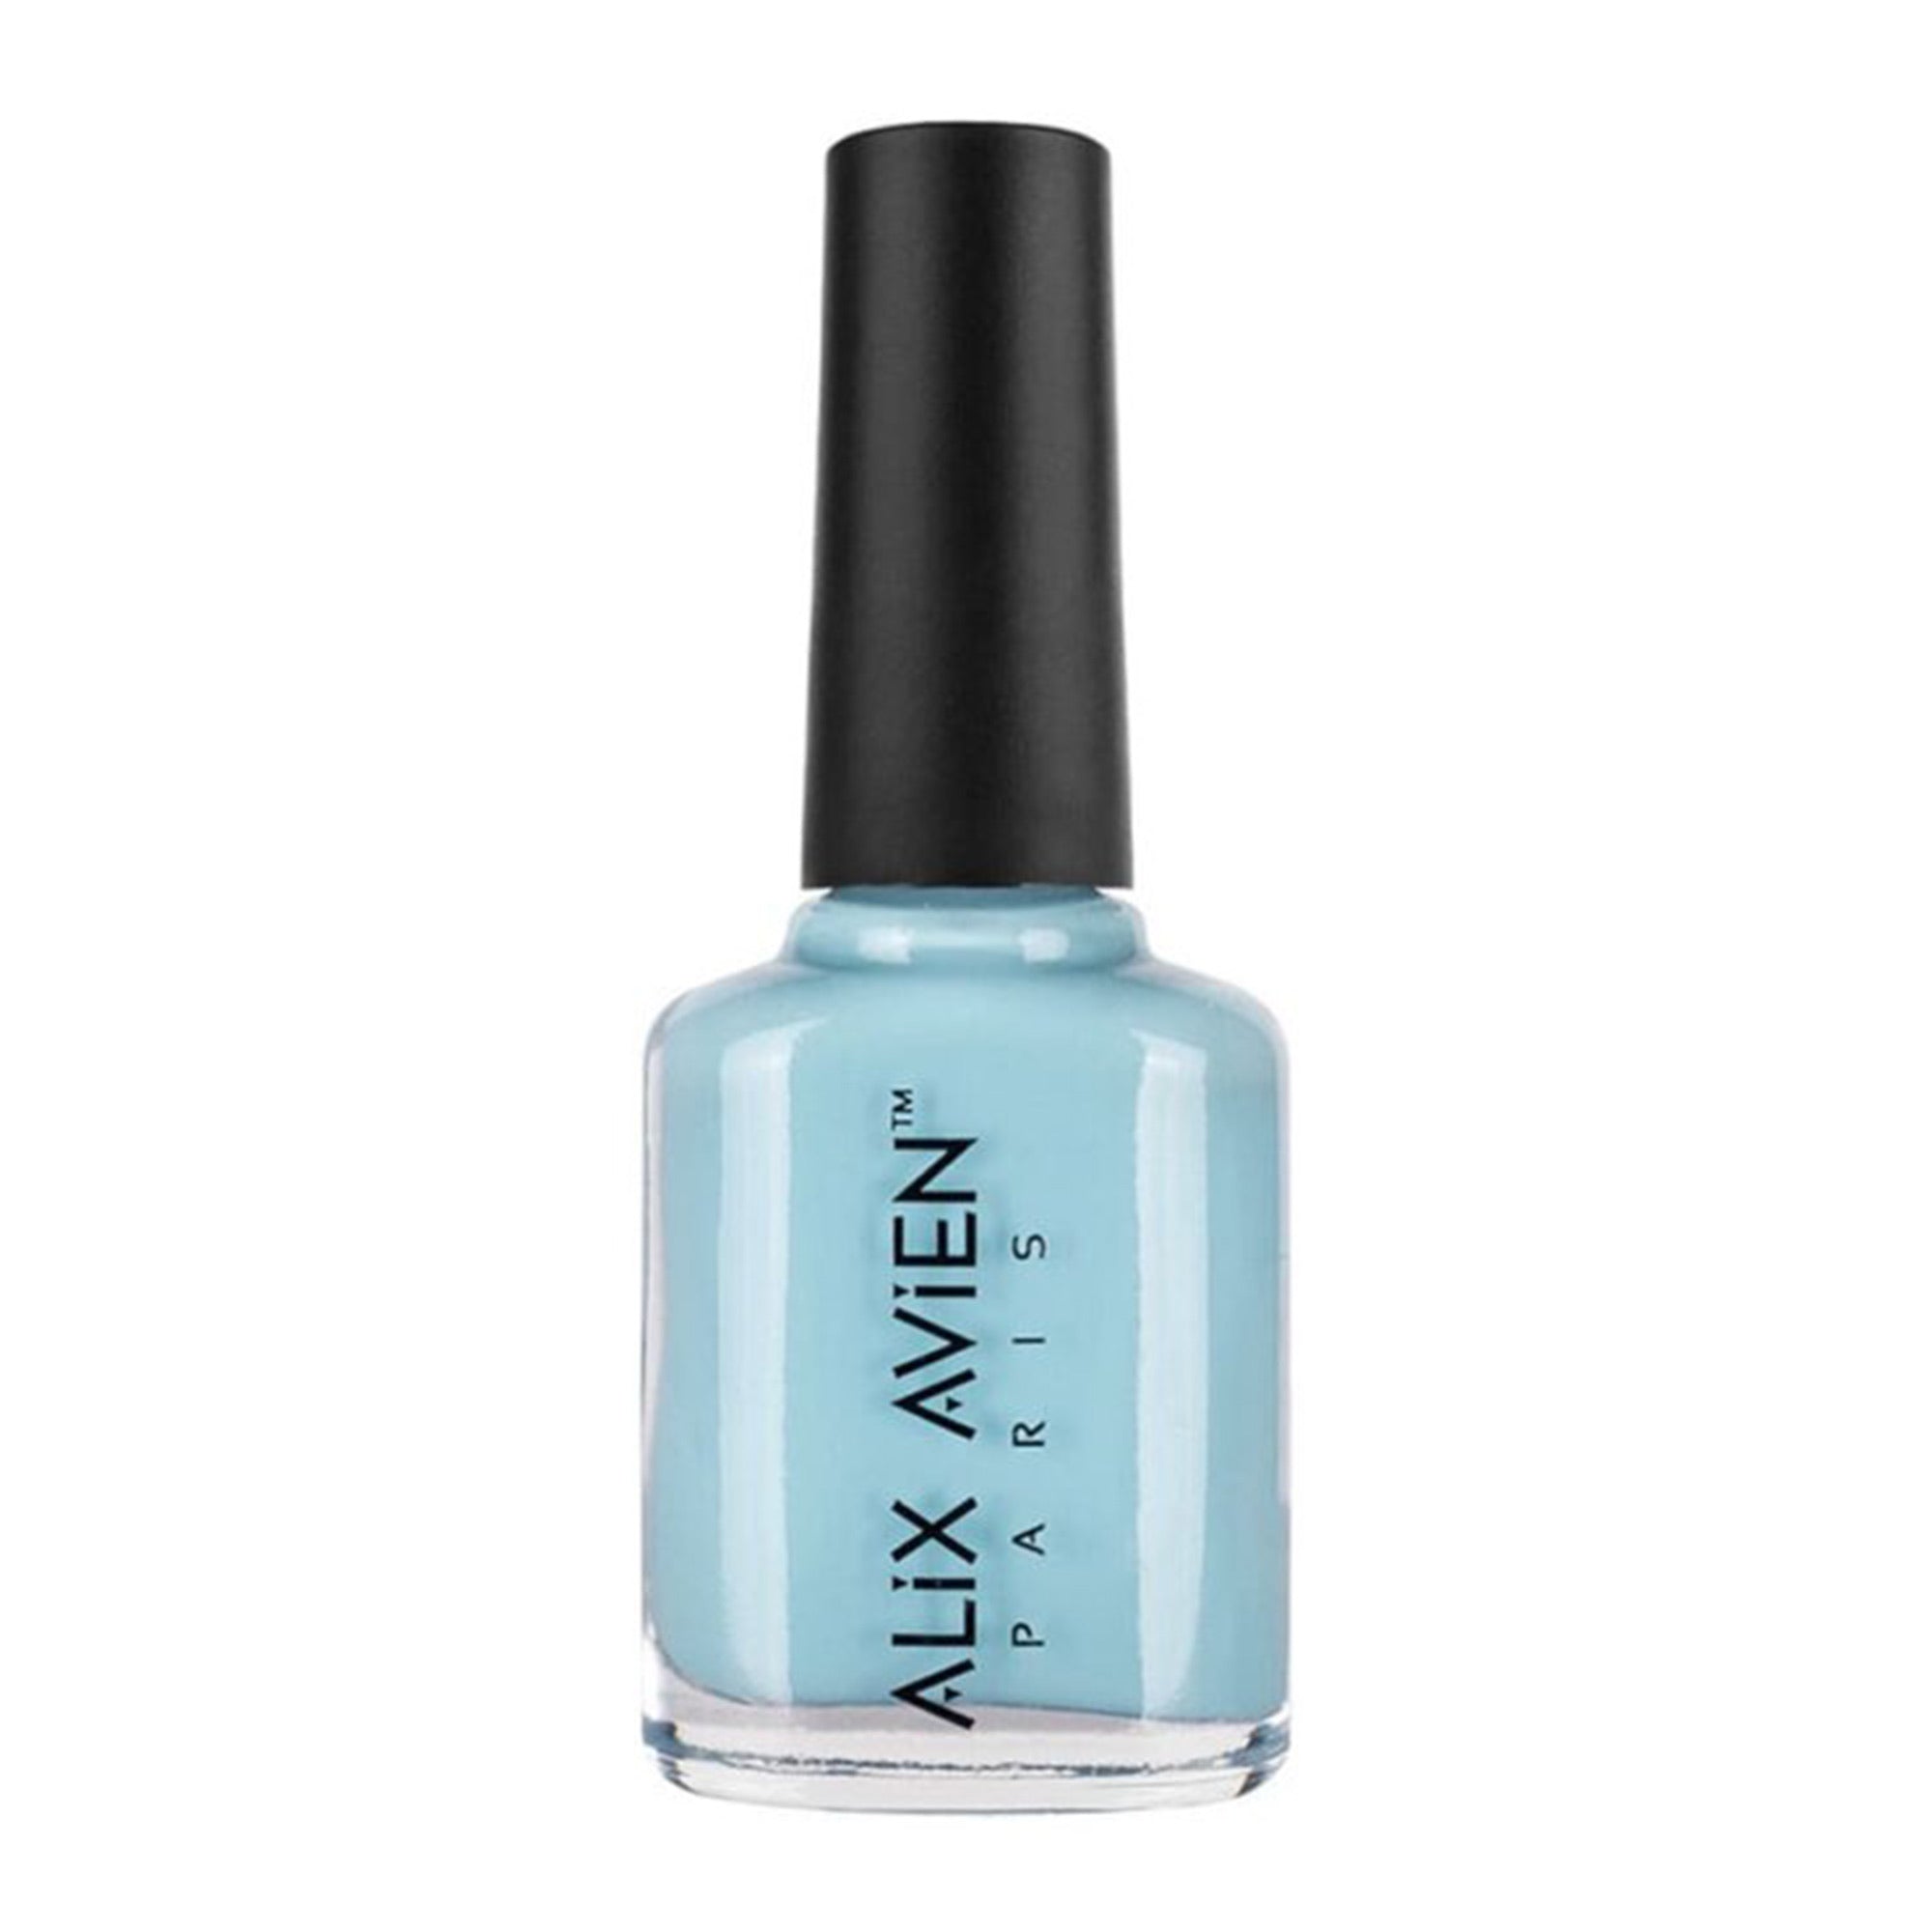 Alix Avien - Nail Polish No.66 (Sky Blue)